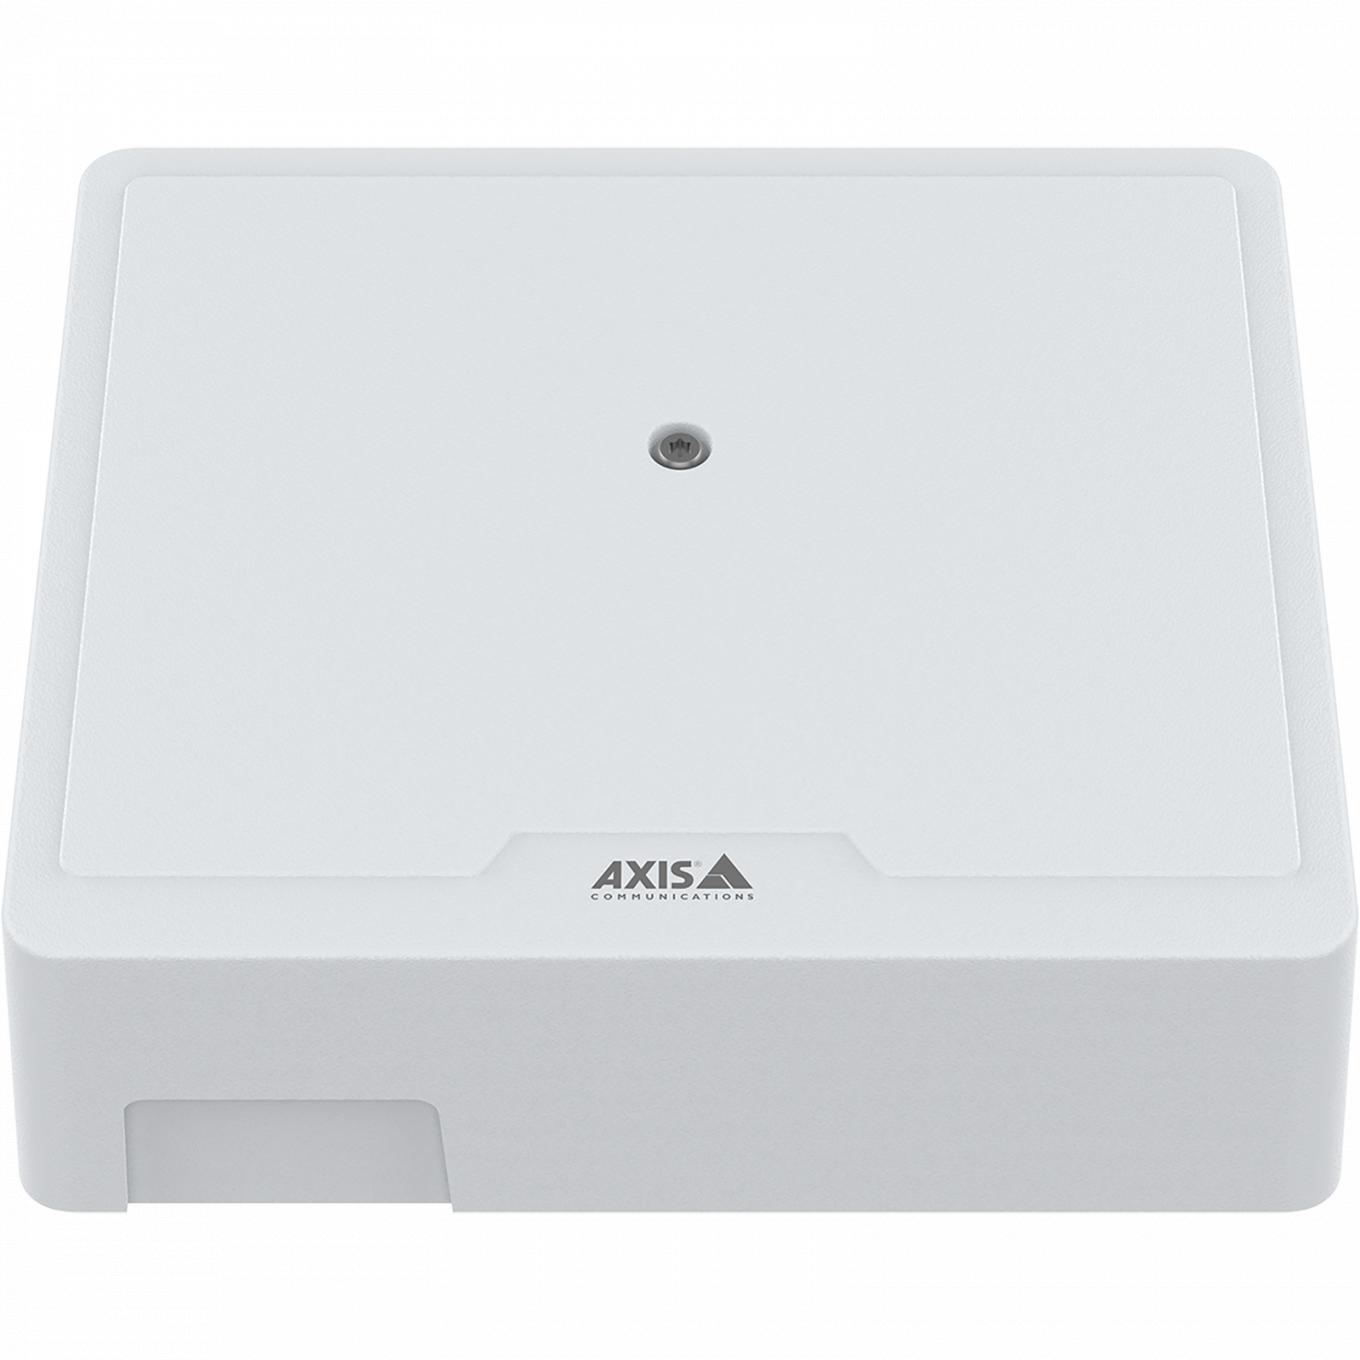 AXIS A1210 Network Door Controller, widok z przodu